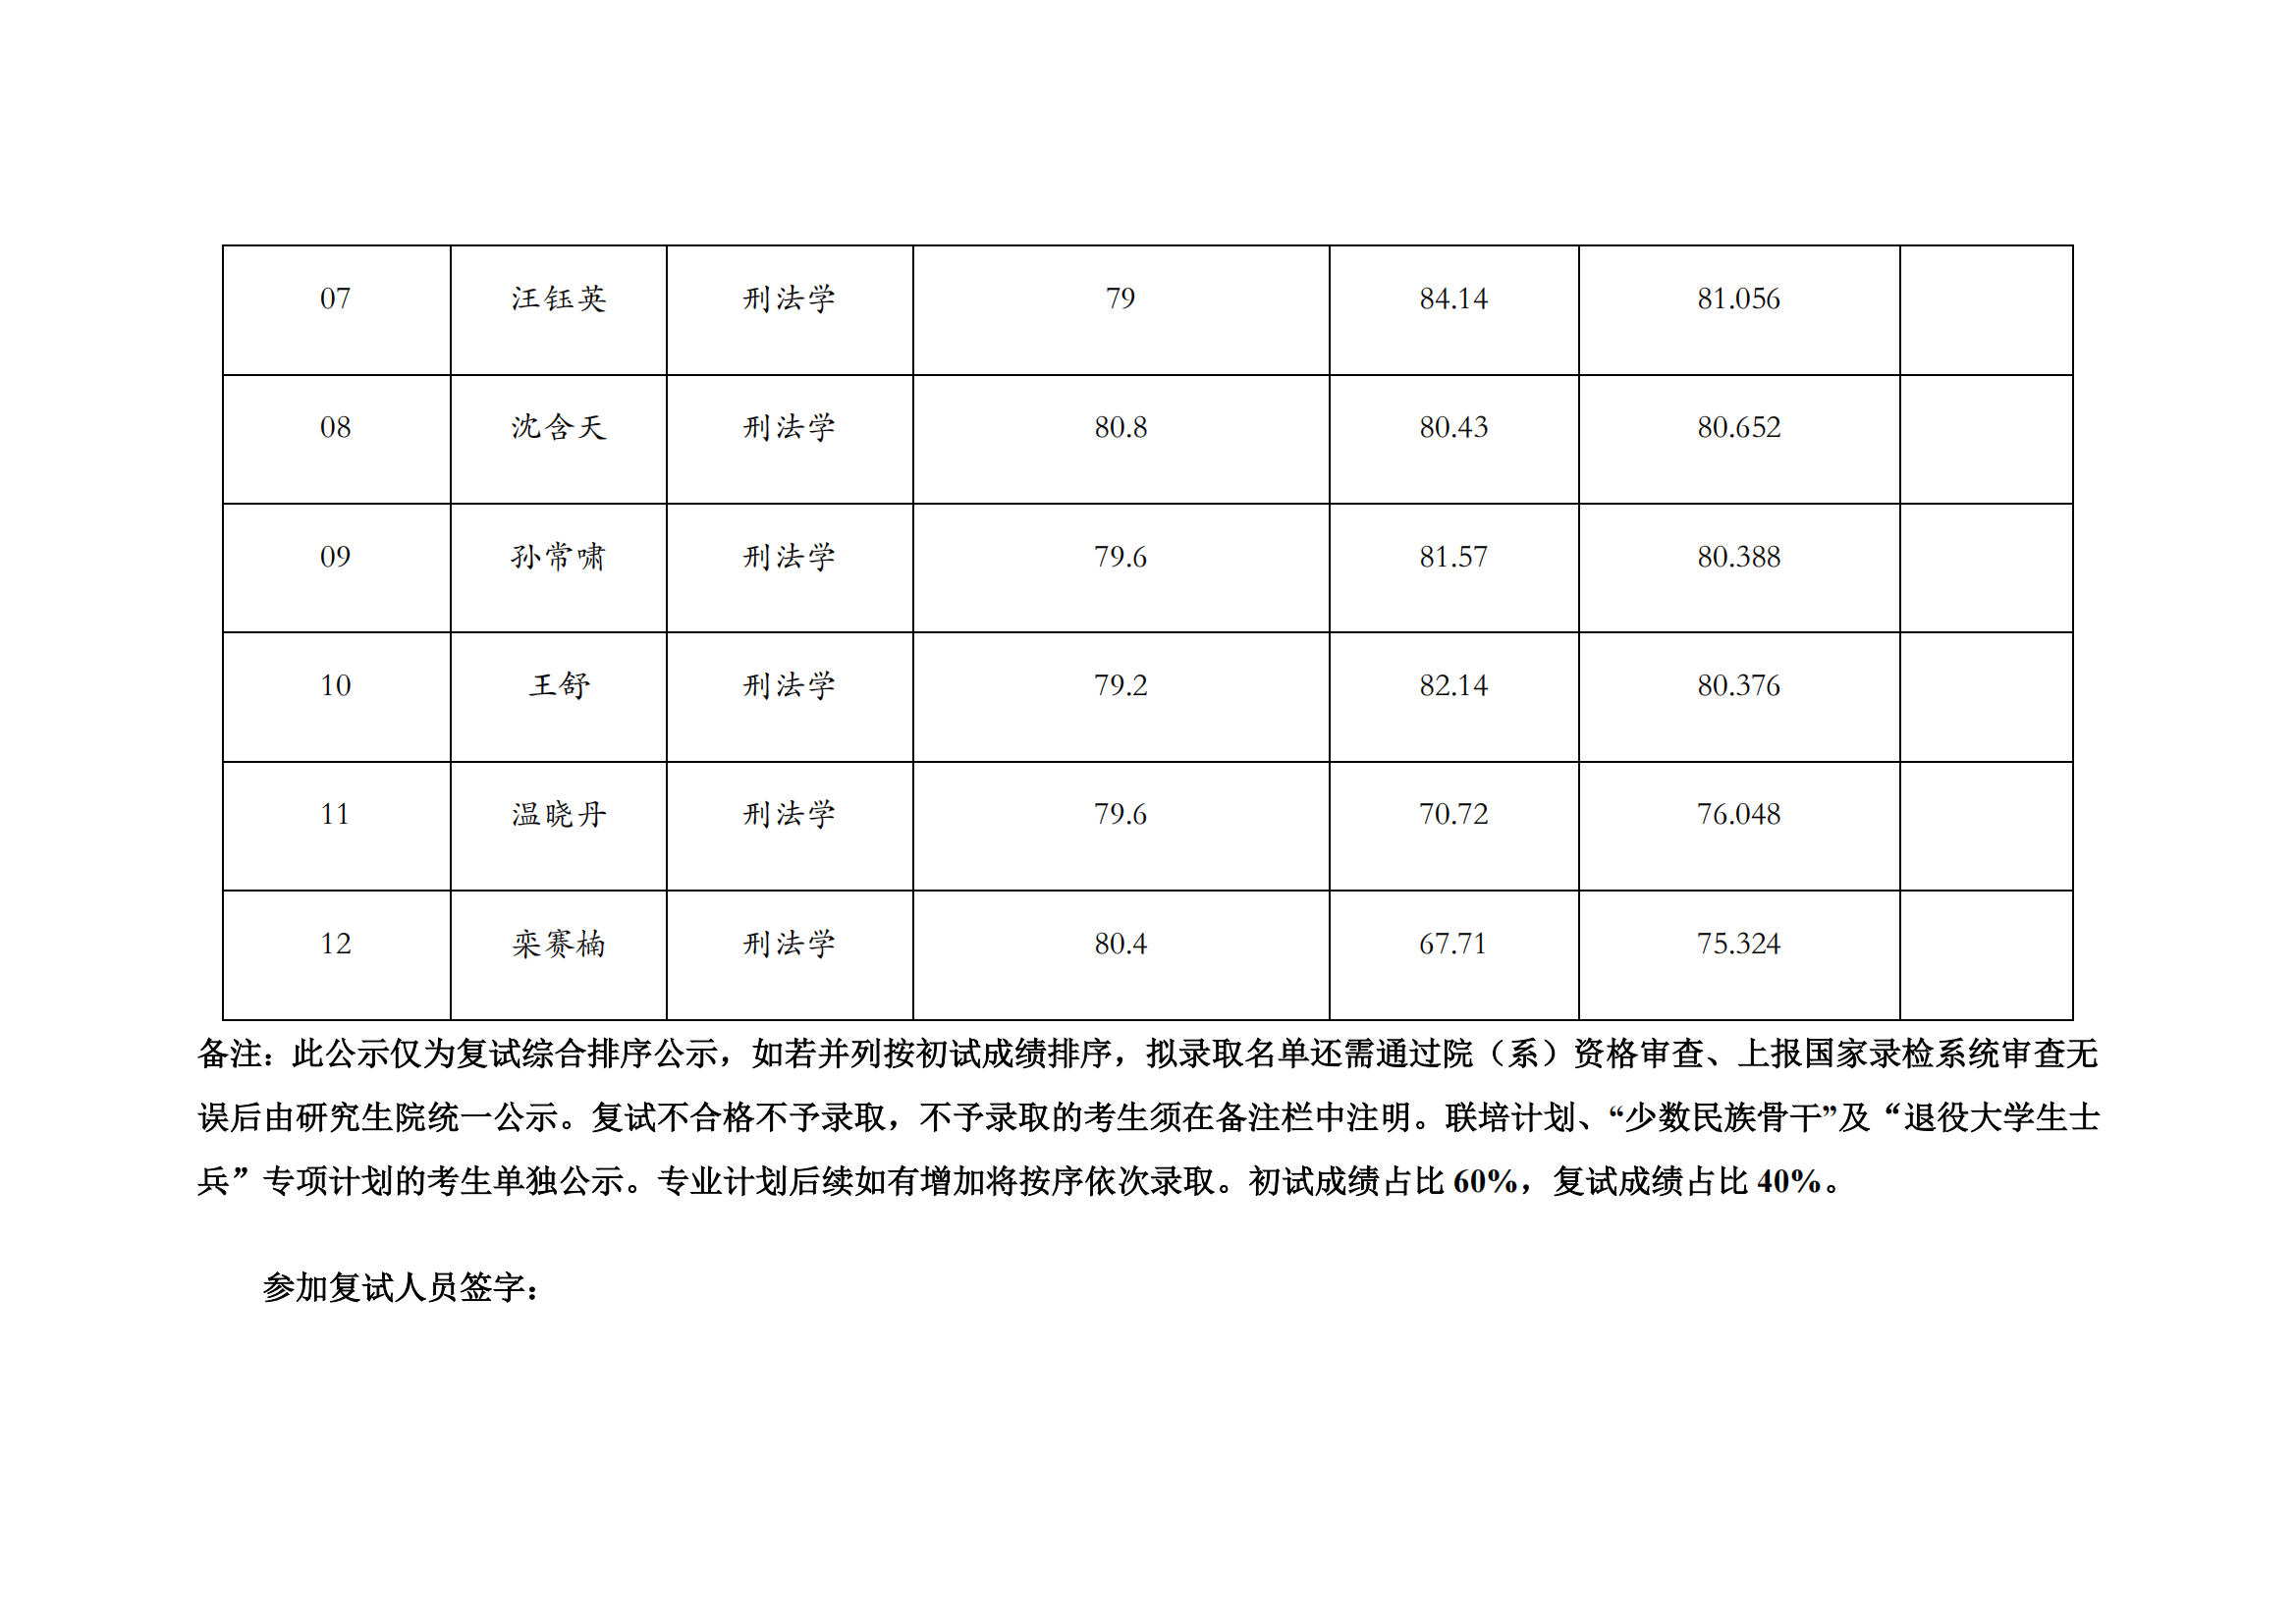 郑州大学 2022 年硕士研究生复试结果综合排序公示表【刑法学】_01.png